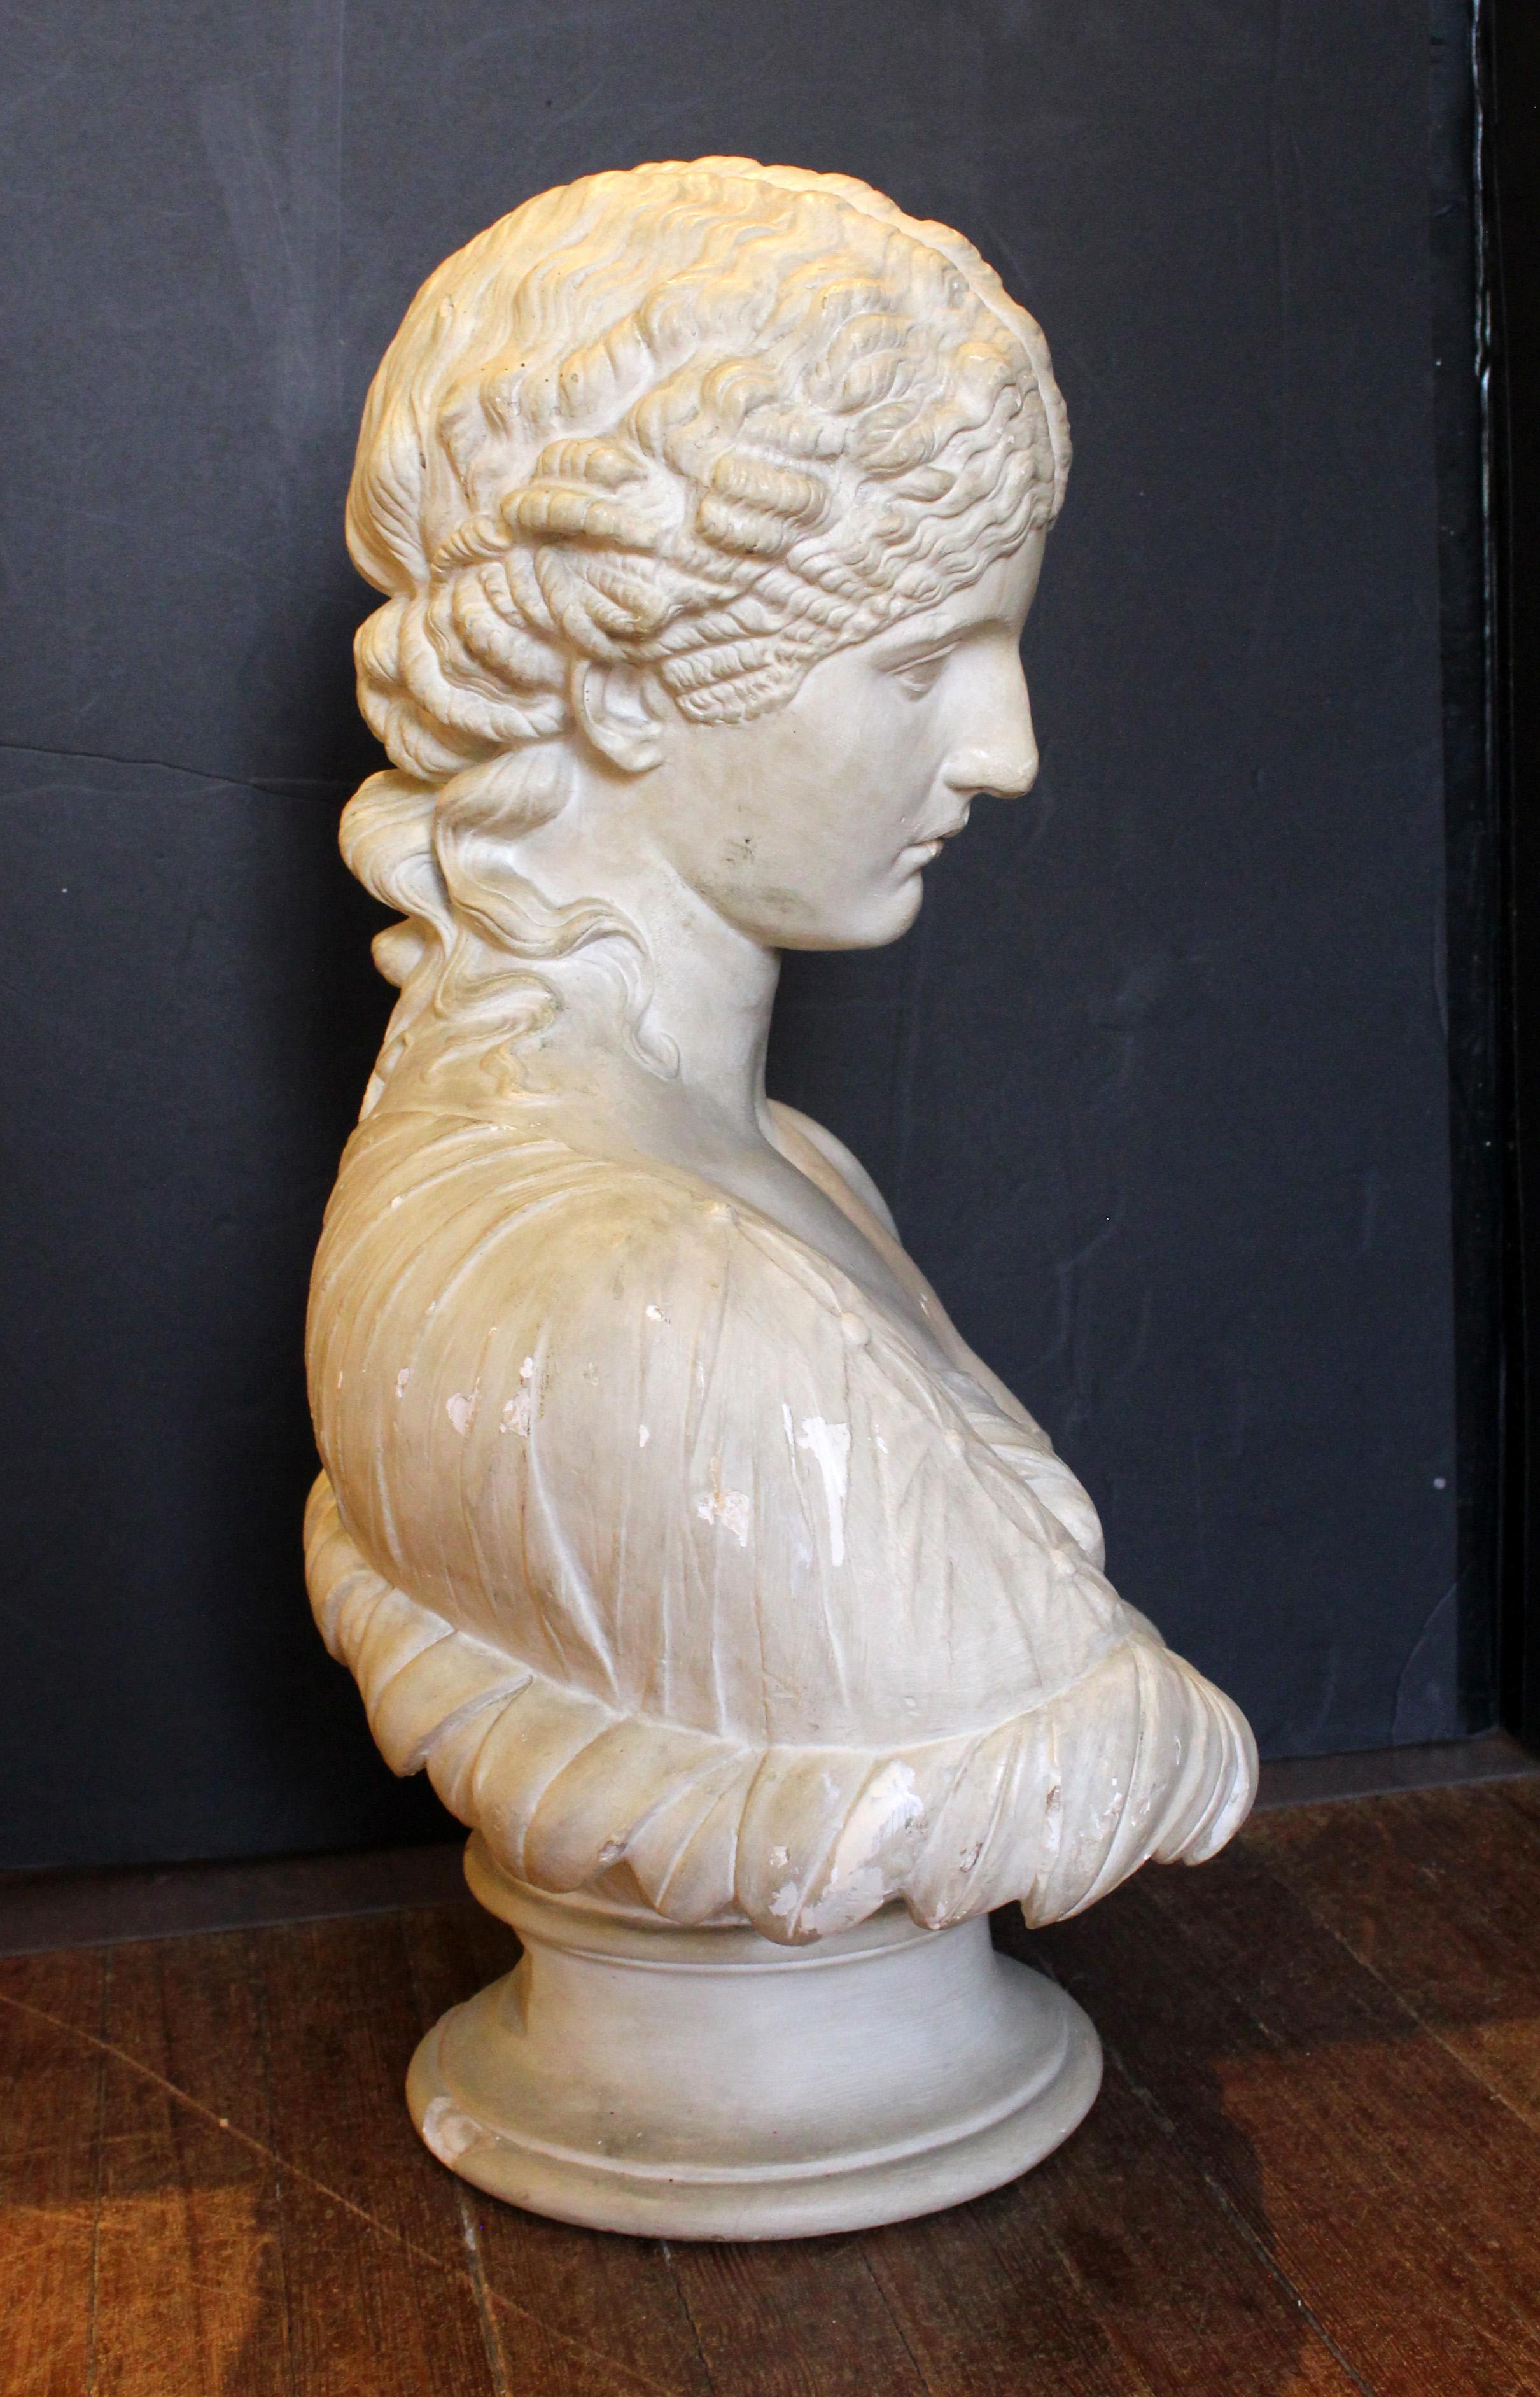 Buste en plâtre et faux marbre d'Antonia, réalisé par D. Brucciani & Co. Londres, fin du XIXe siècle. Une femme émergeant d'un calice de feuilles est venue représenter la nymphe Clytie. Une copie du marbre du British Museum de Rome datant de 40-50